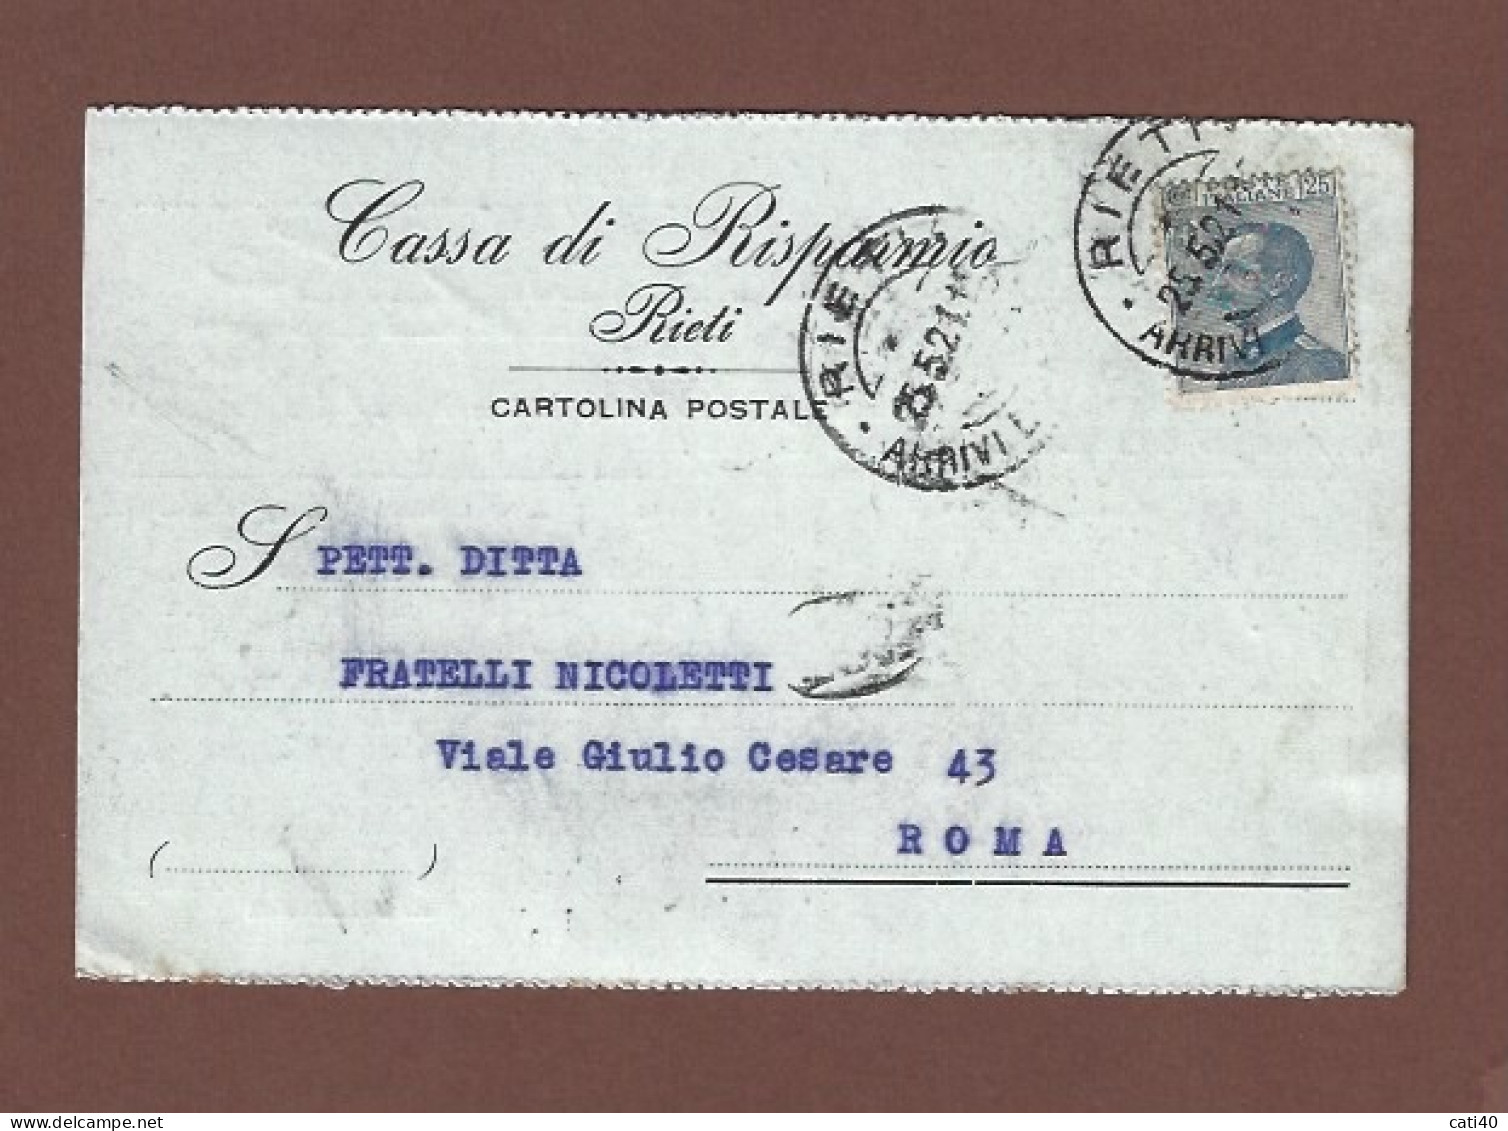 CASSA DI RISPARMIO DI RIETI  - CARTOLINA POSTALE PER ROMA IN DATA 25 MAGGIO 1921 - Banques